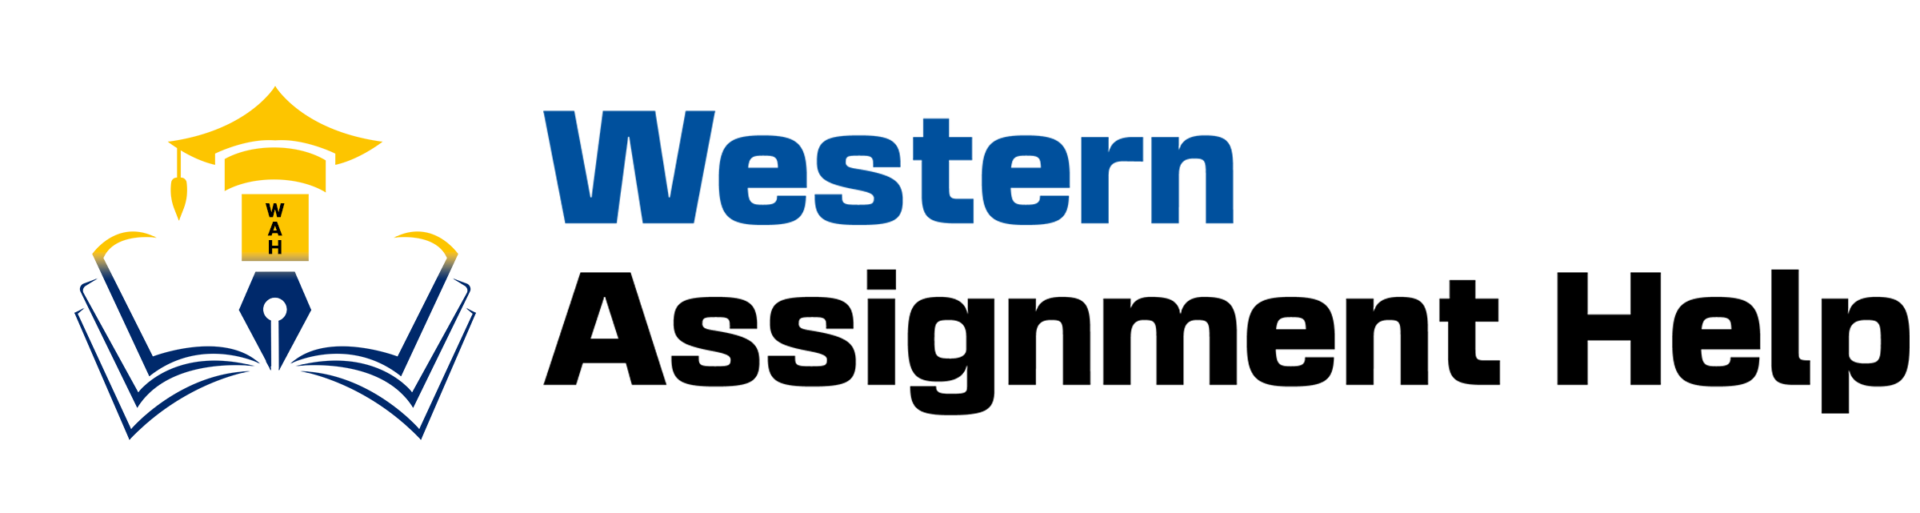 Western Assignment Help Logo